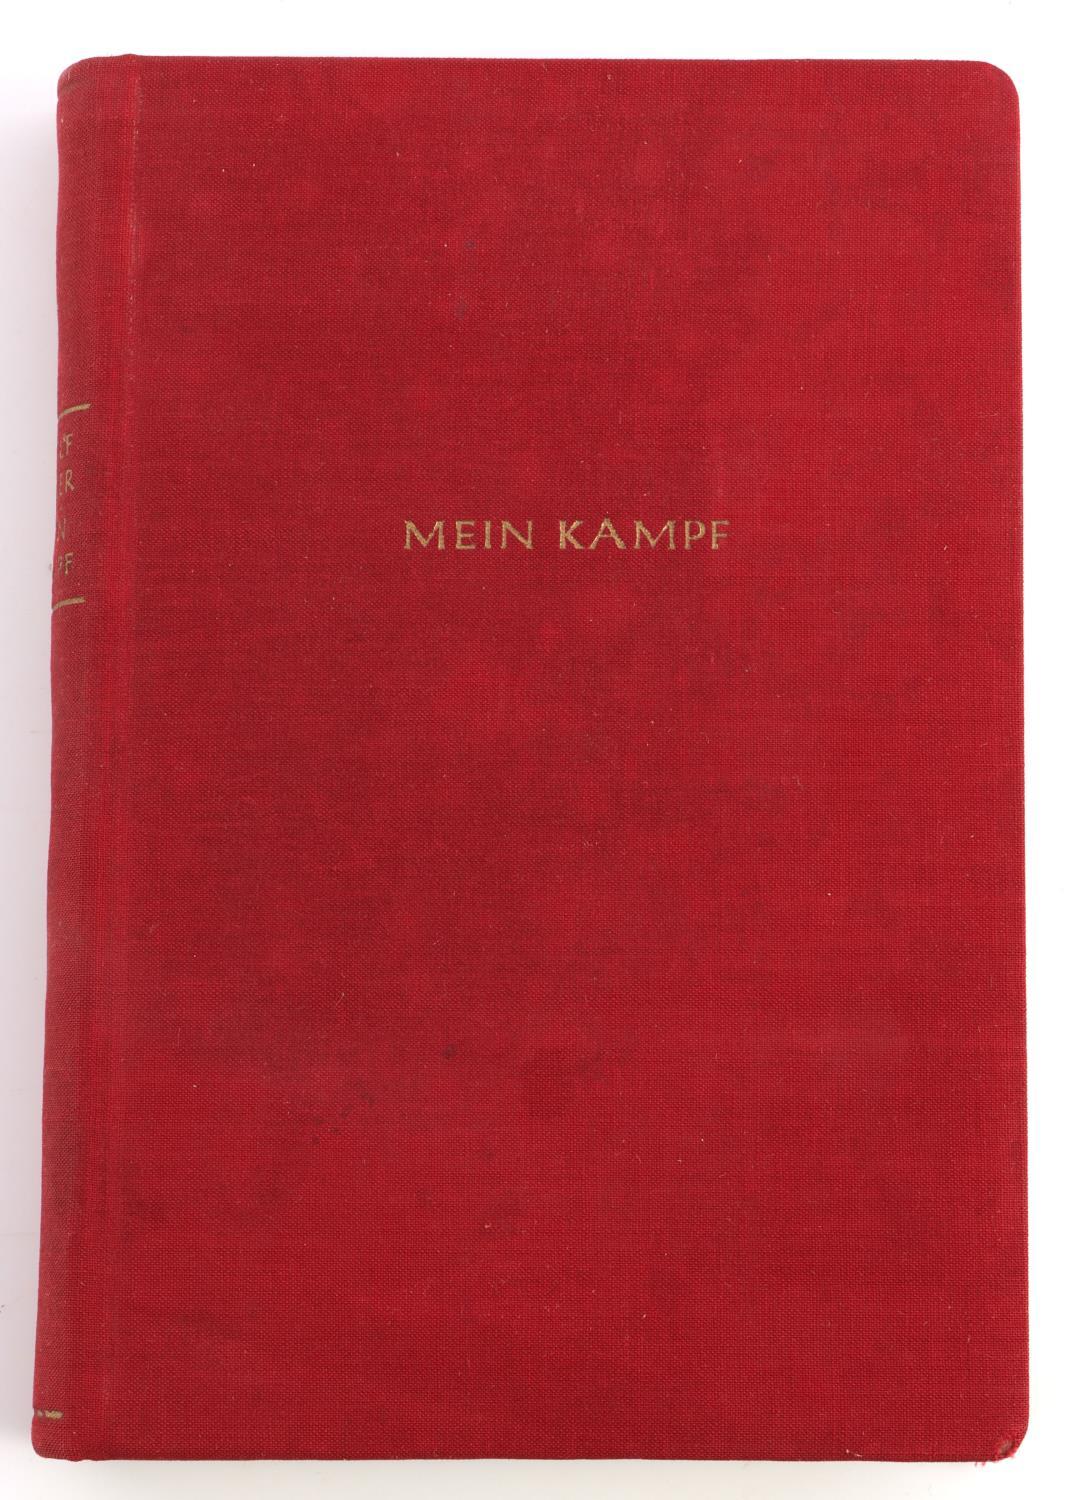 WWII GERMAN ADOLF HITLER MEIN KAMPF FELDPOST BOOK